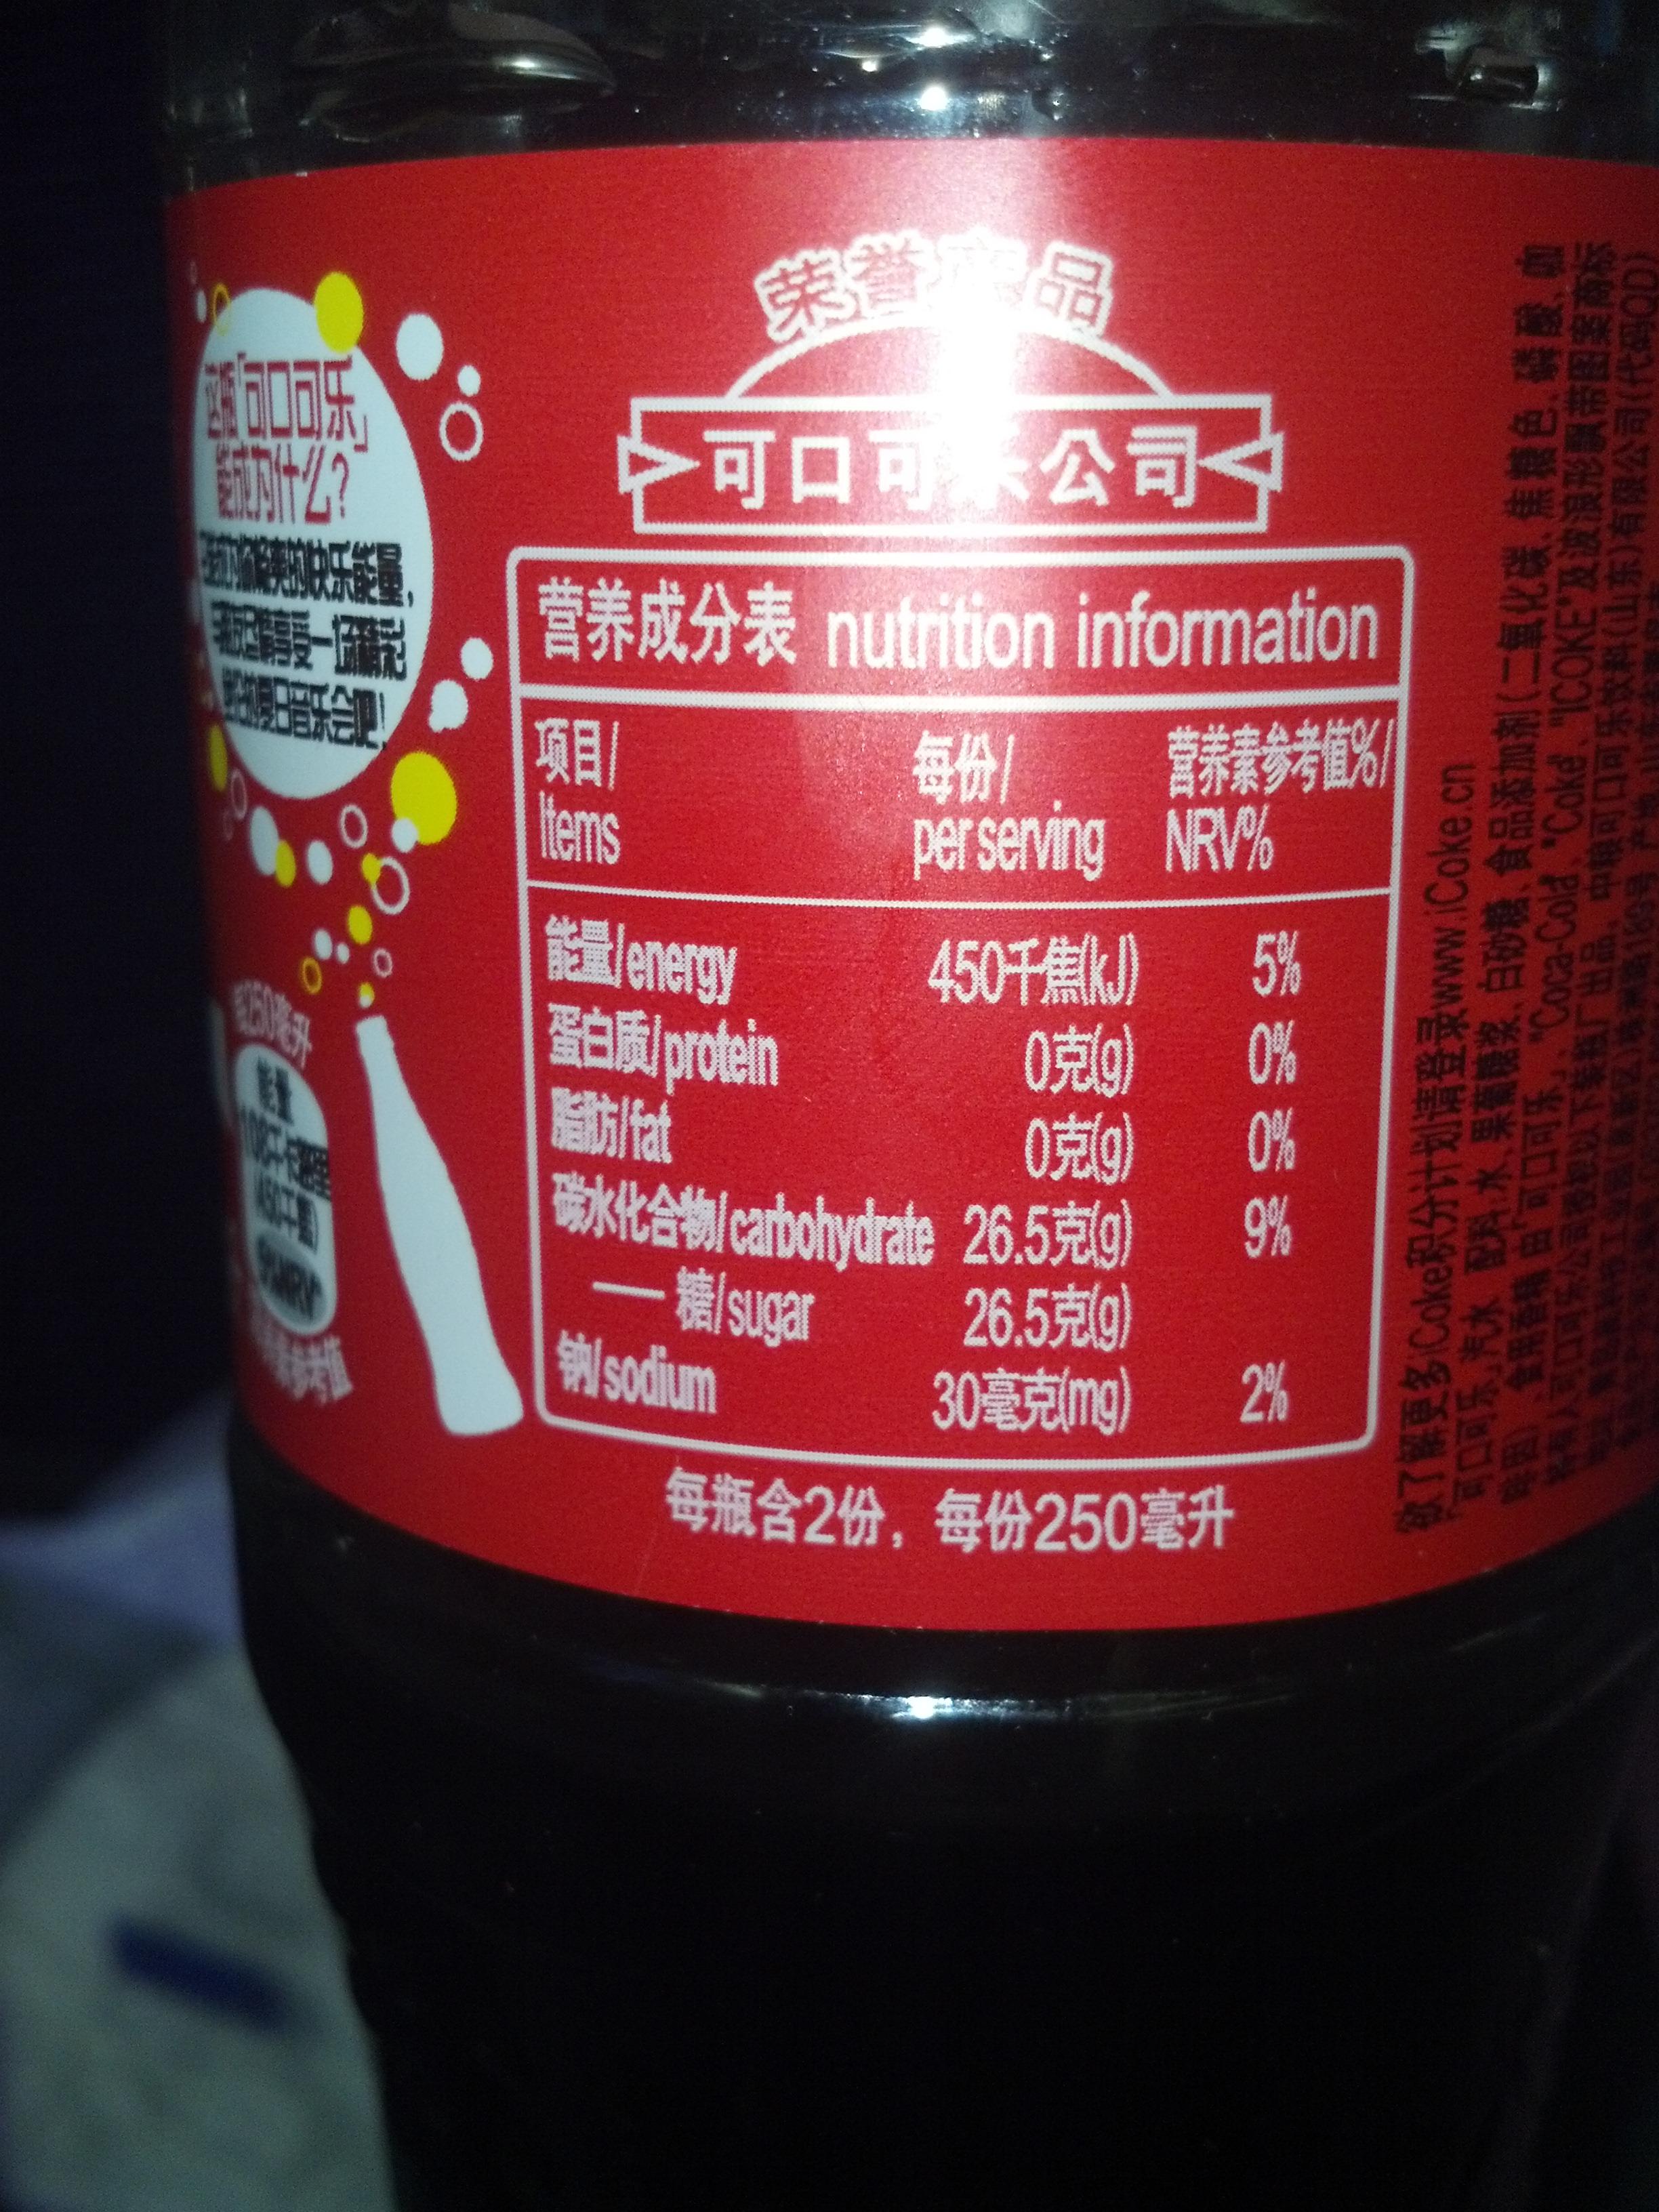 为什么可口可乐营养成分表以250毫升为单位?